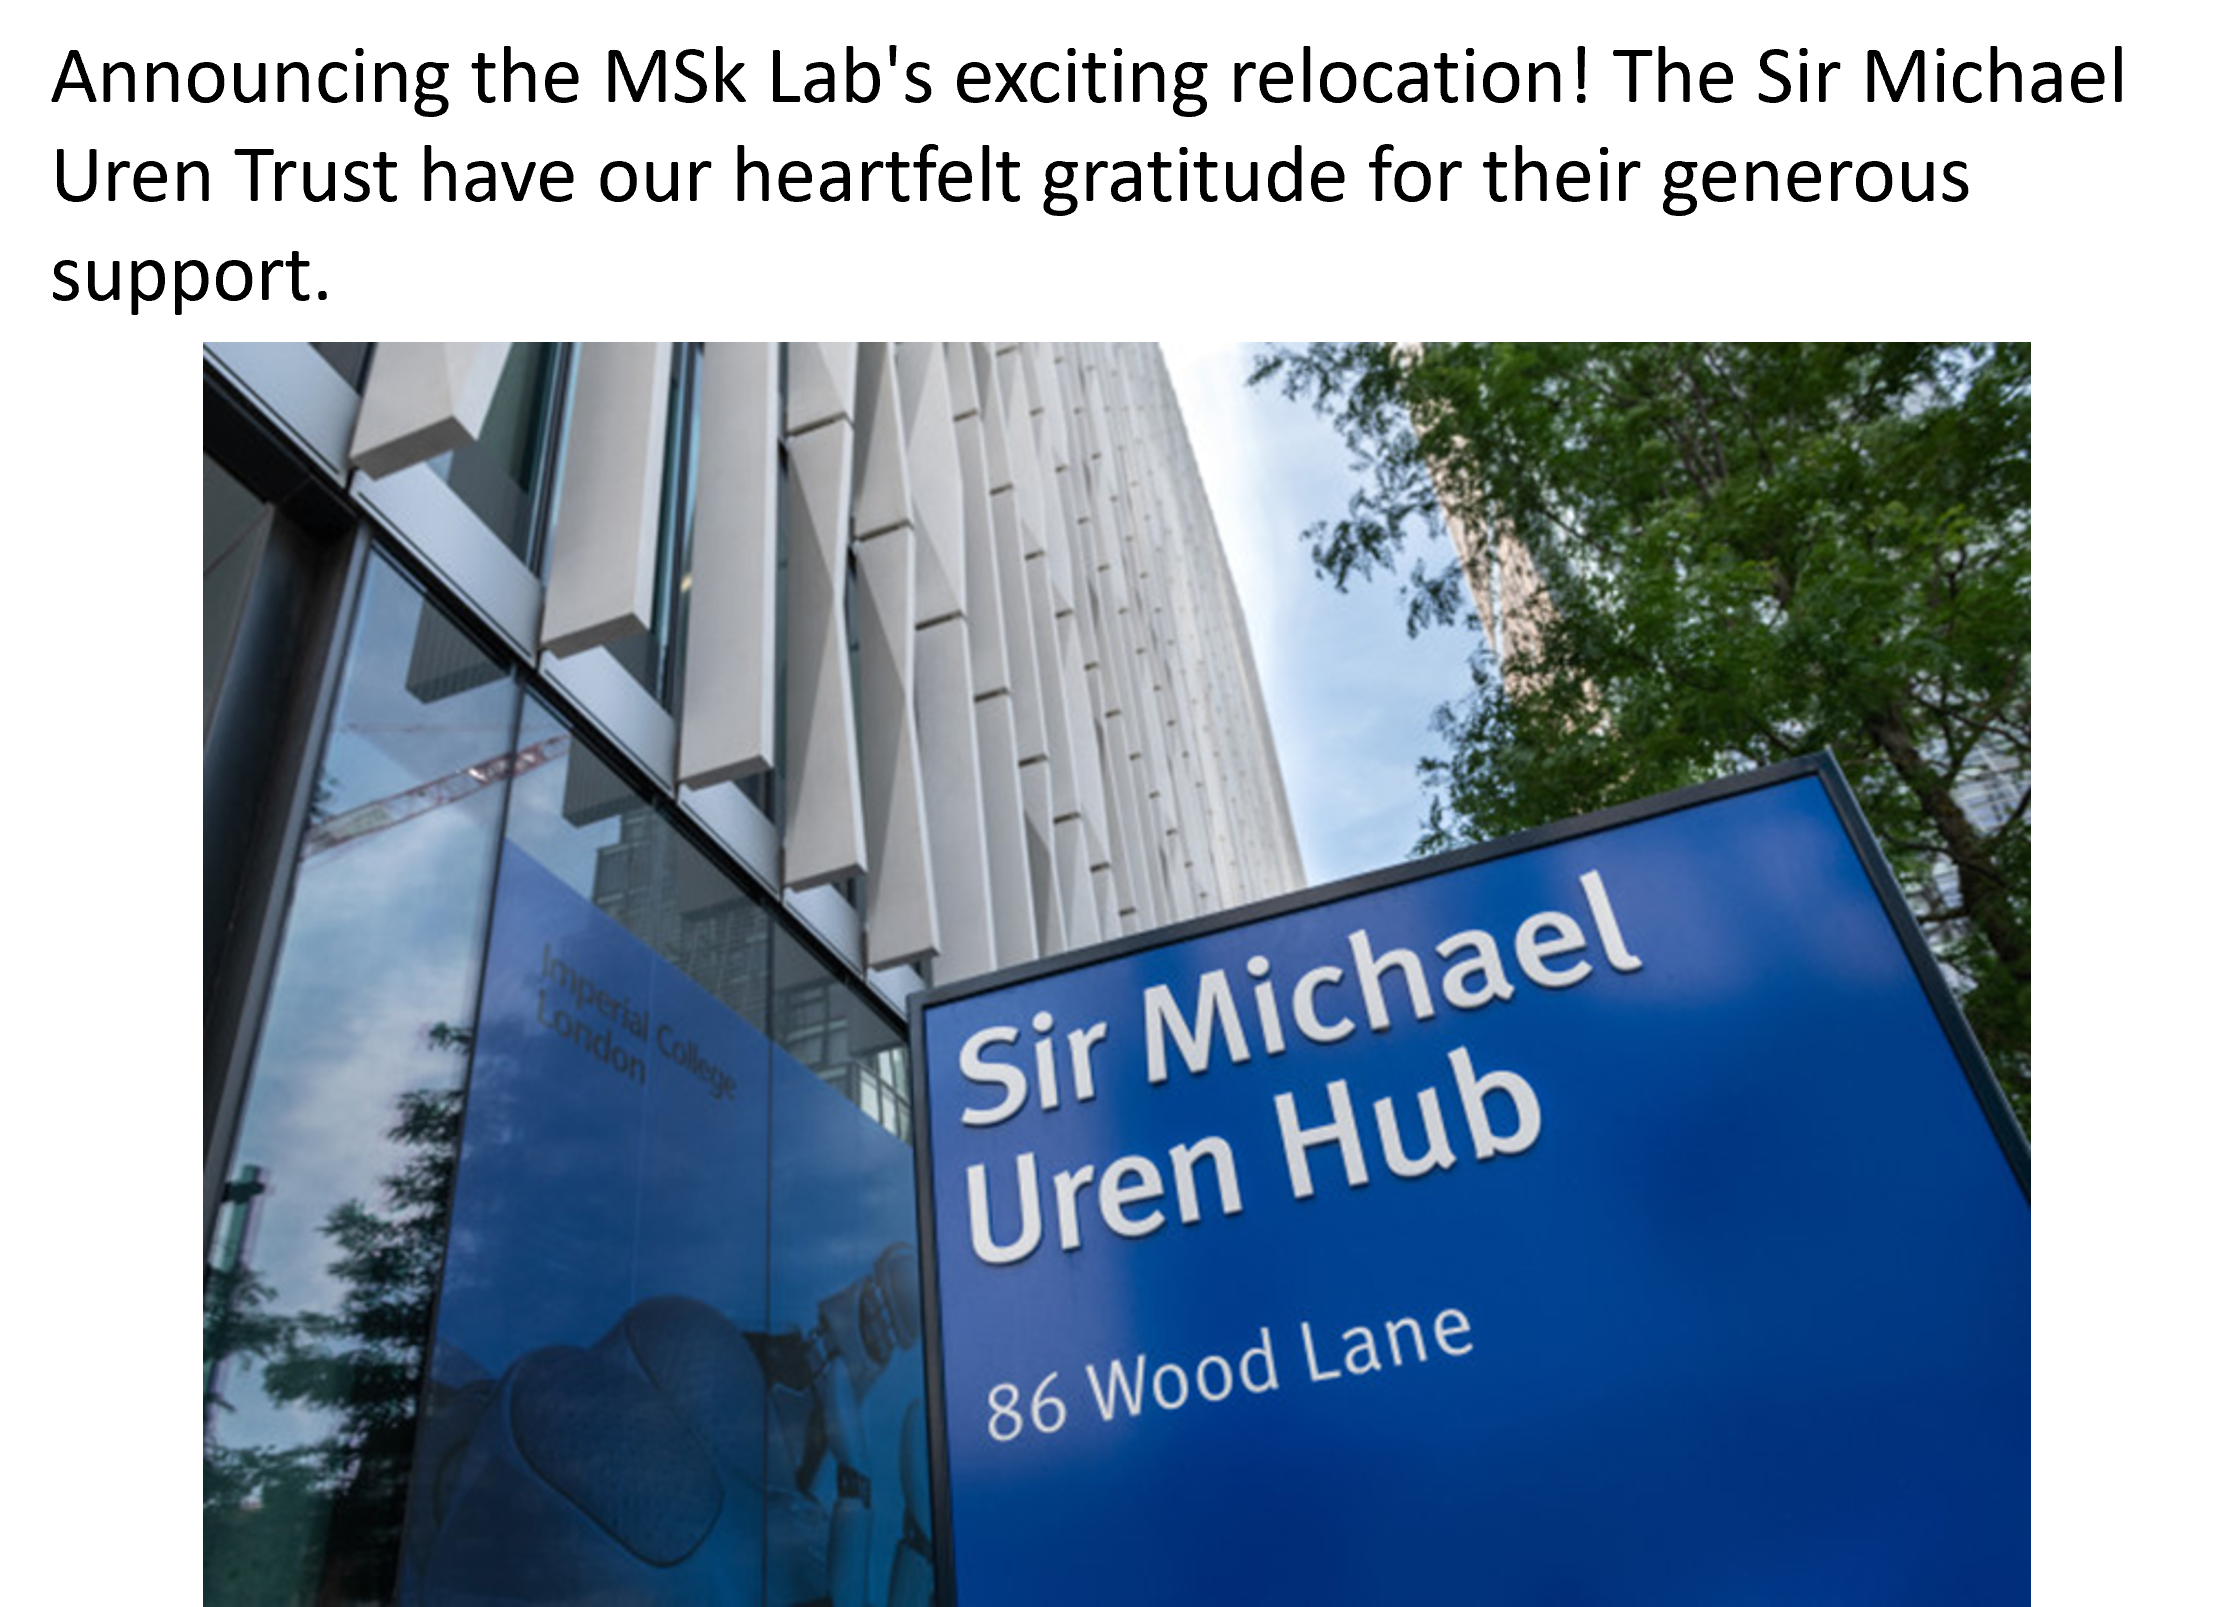 Outside Sir Michael Uren Hub